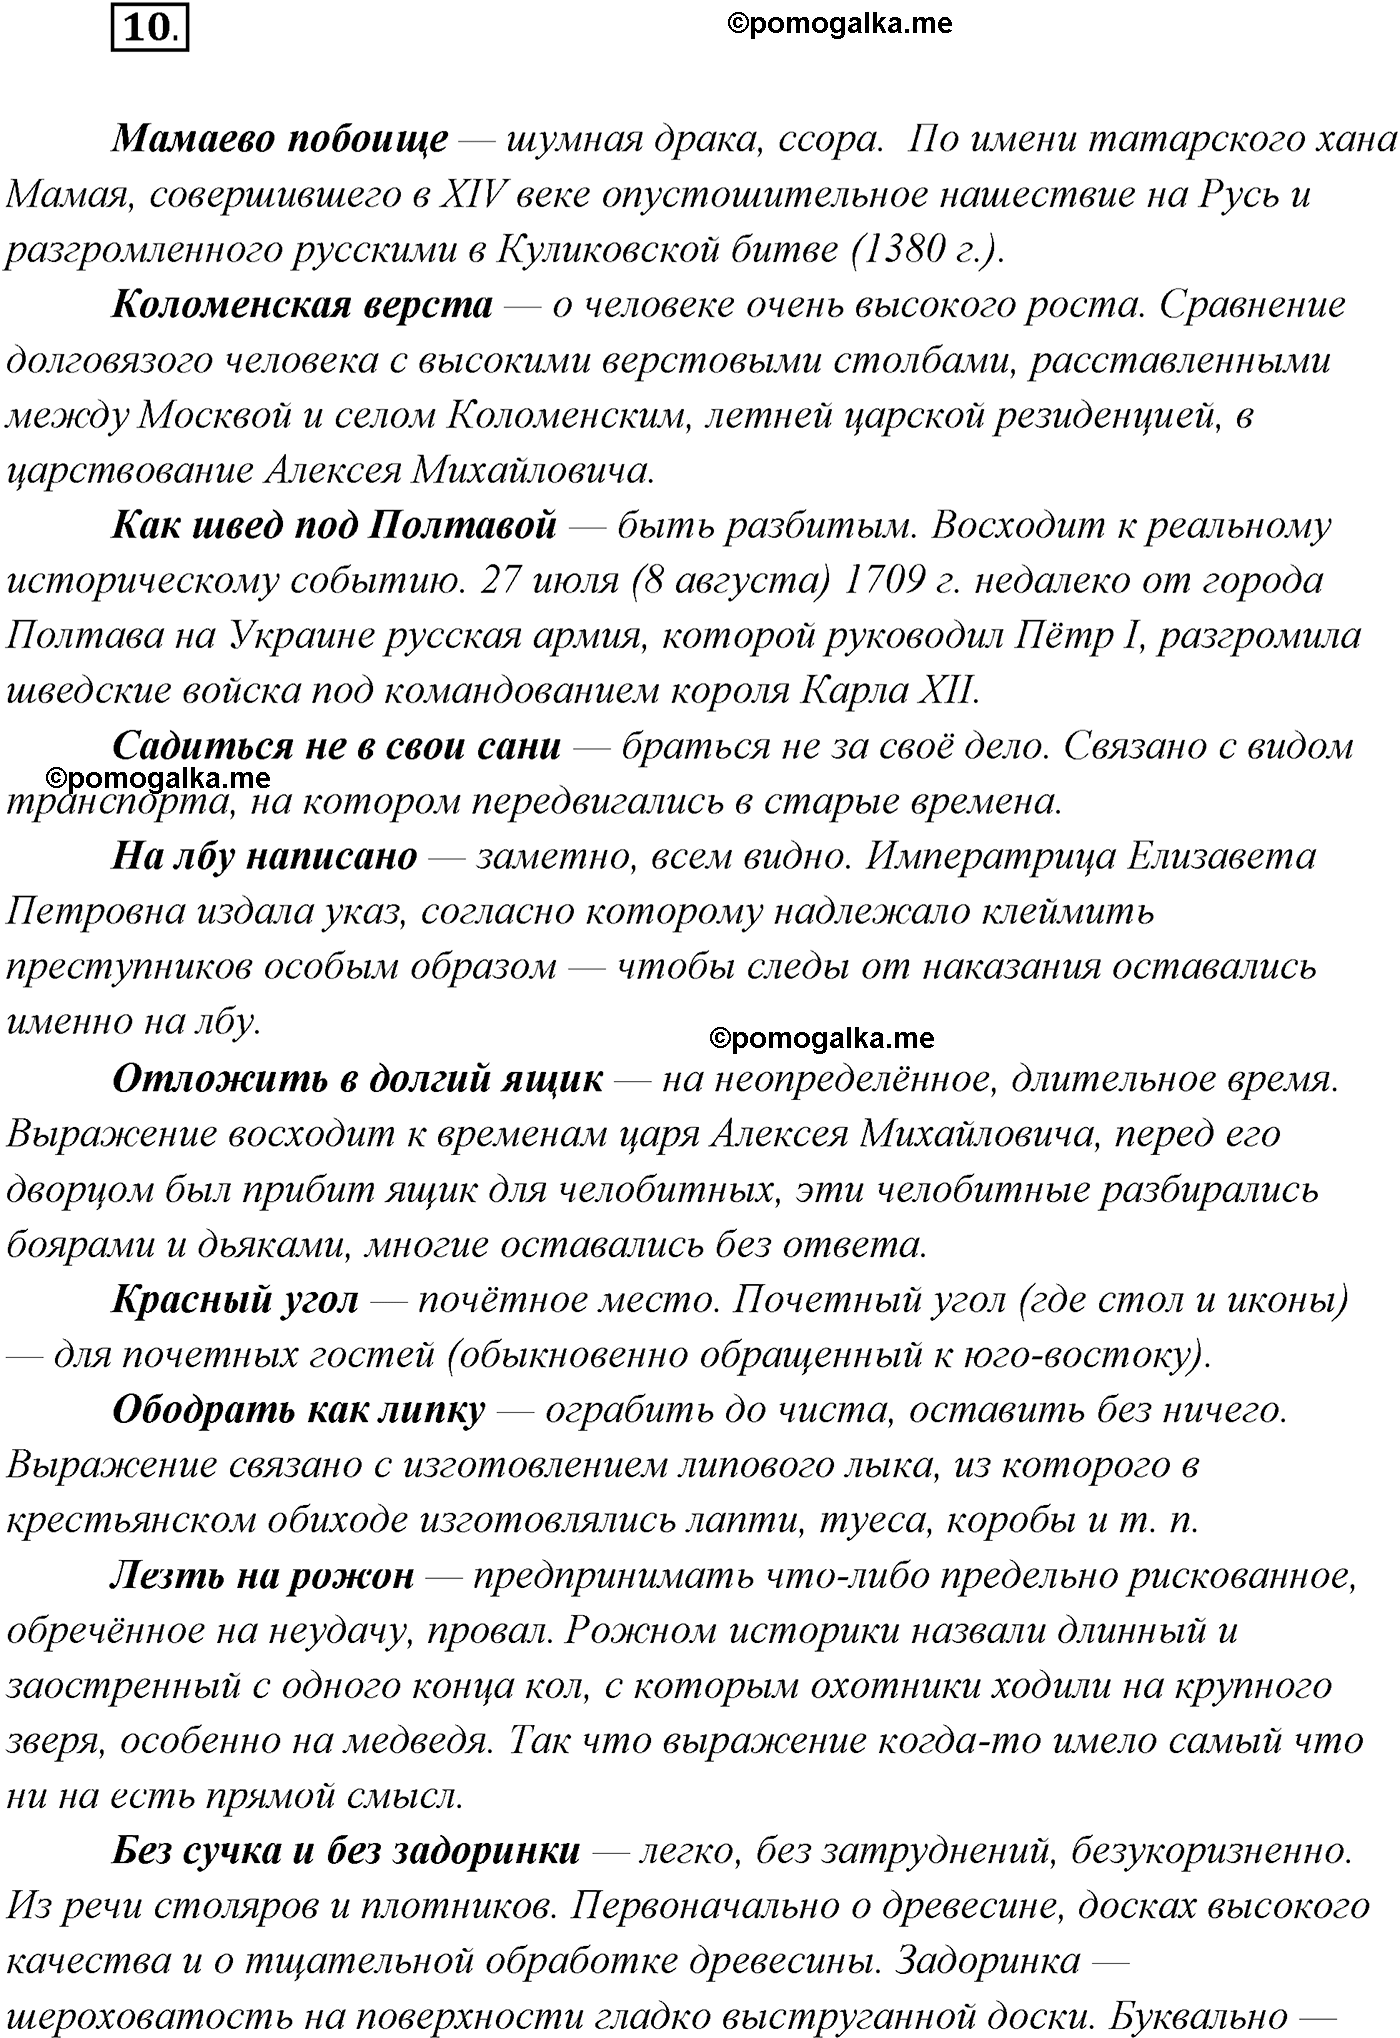 упражнение №10 русский язык 9 класс Рыбченкова, Александрова